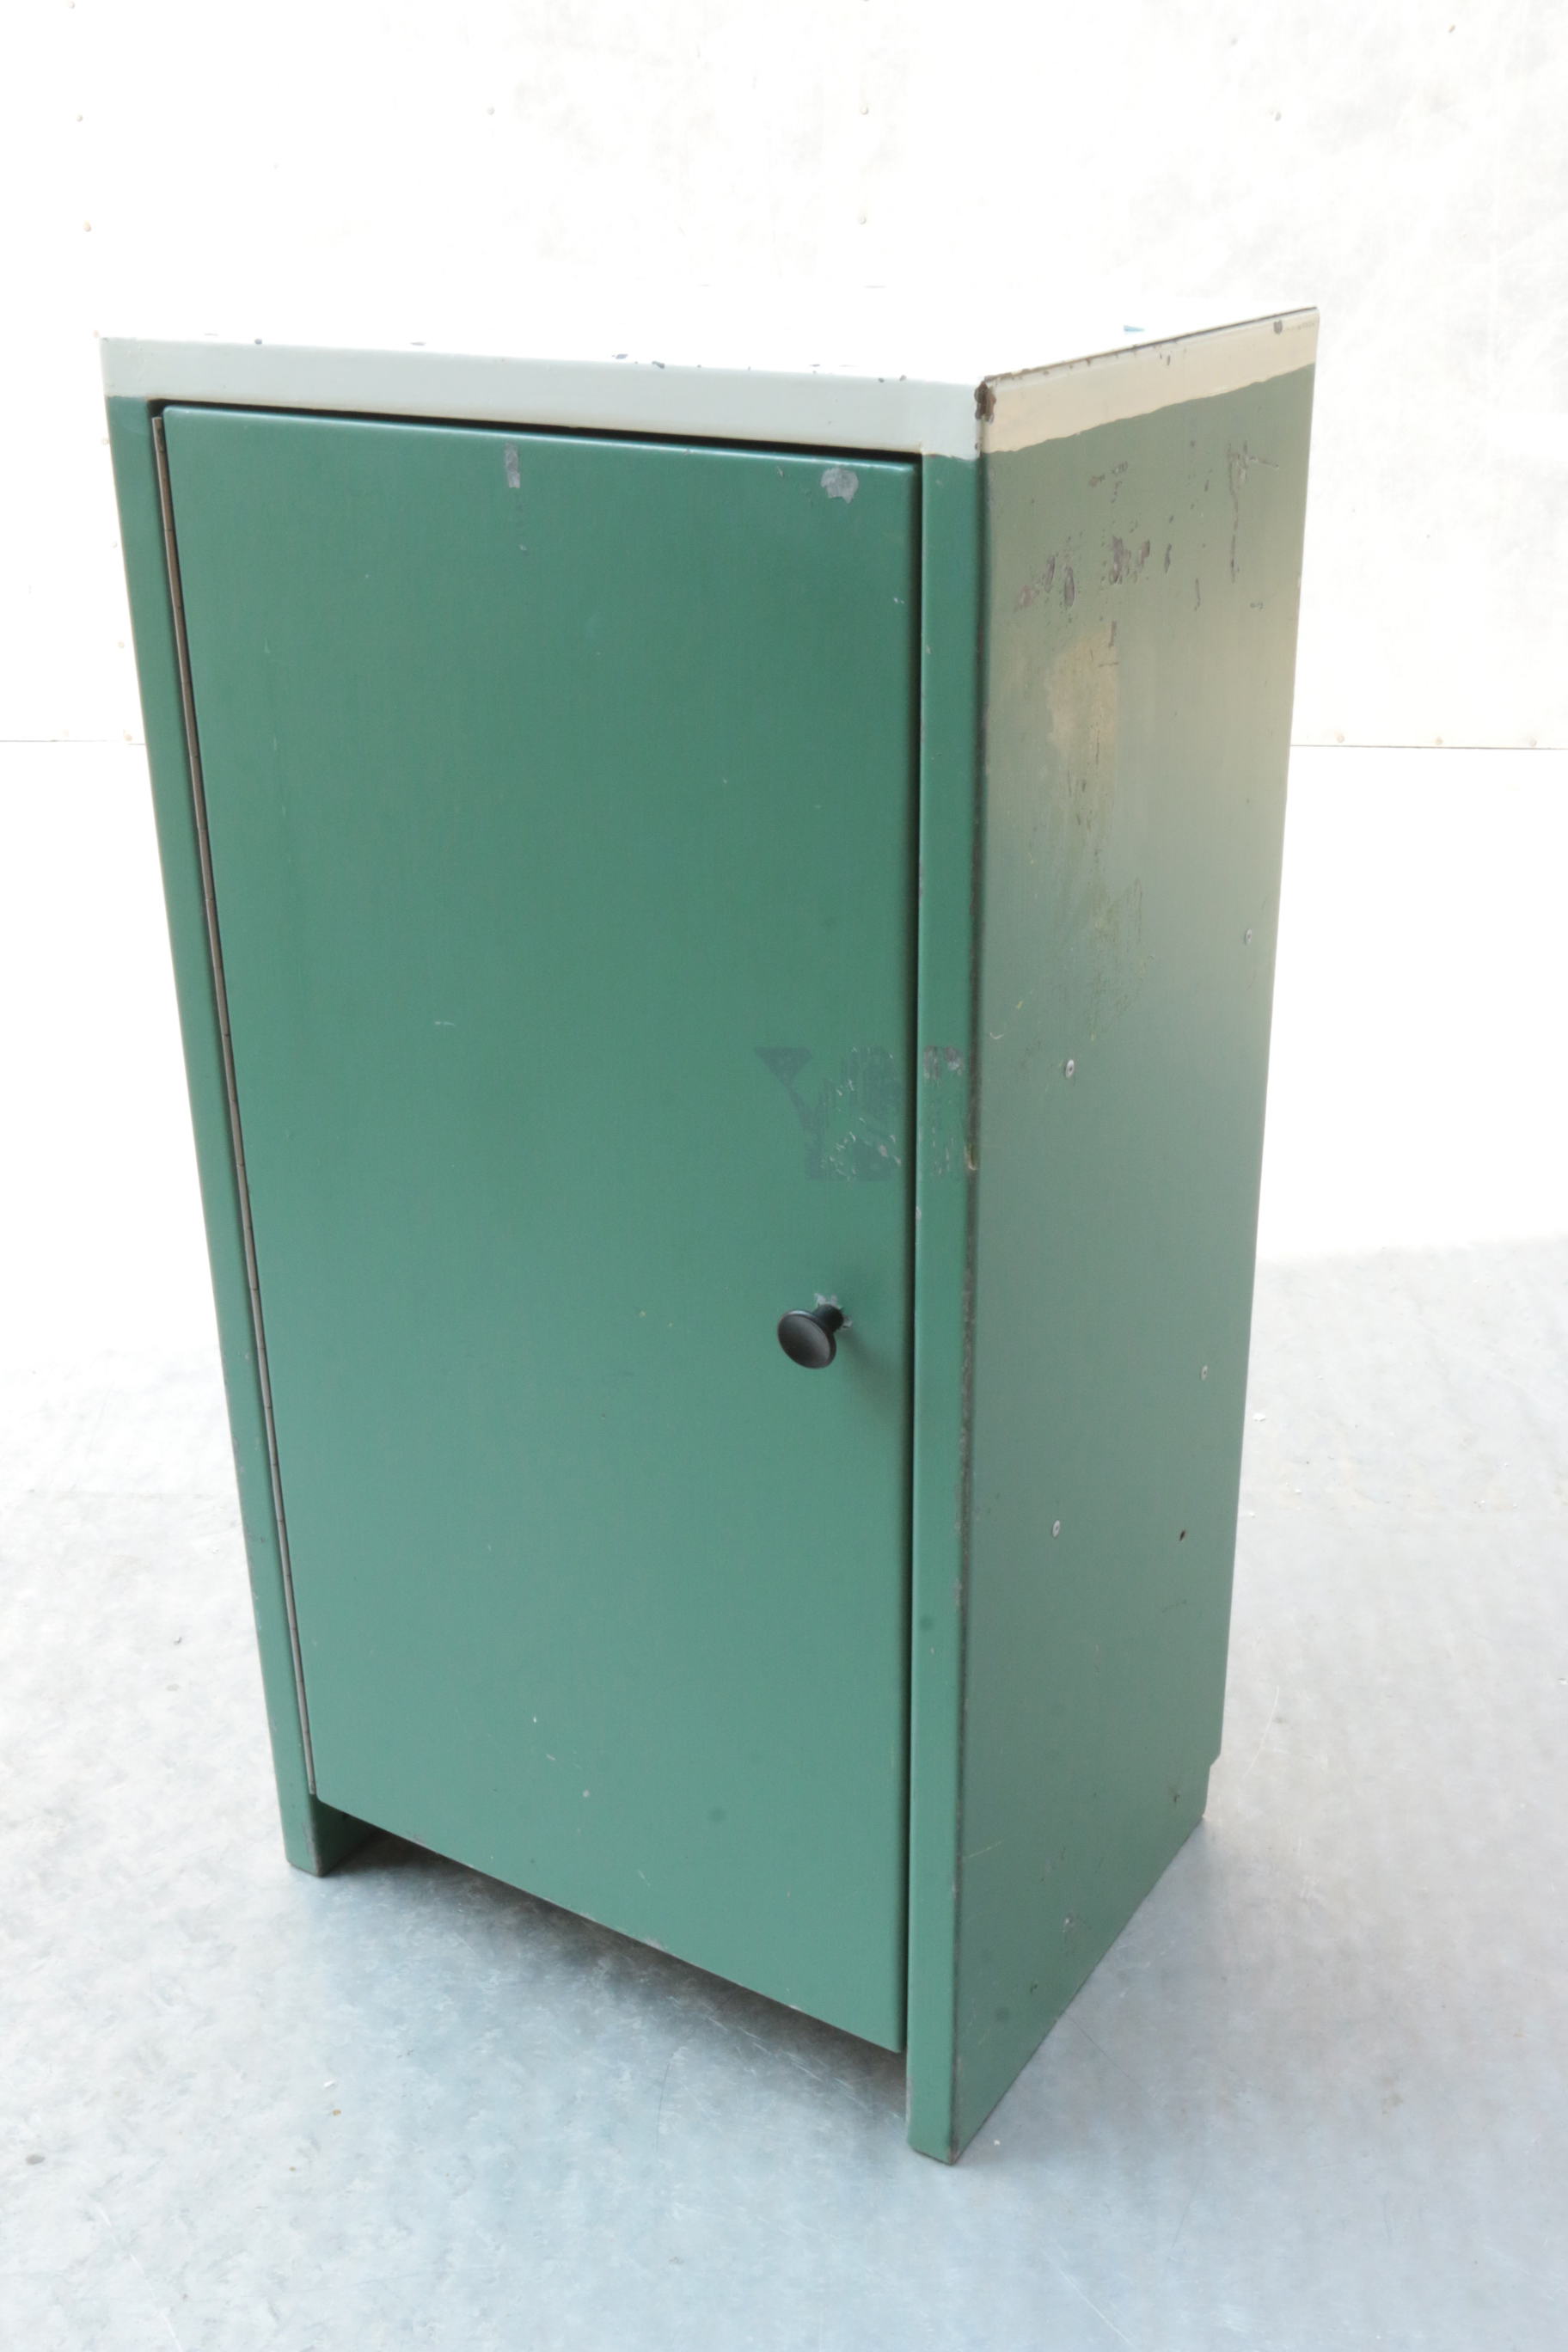 Uitgelezene Industrieel Vintage metalen kastje groen jaren 60 – Dehuiszwaluw CV-45